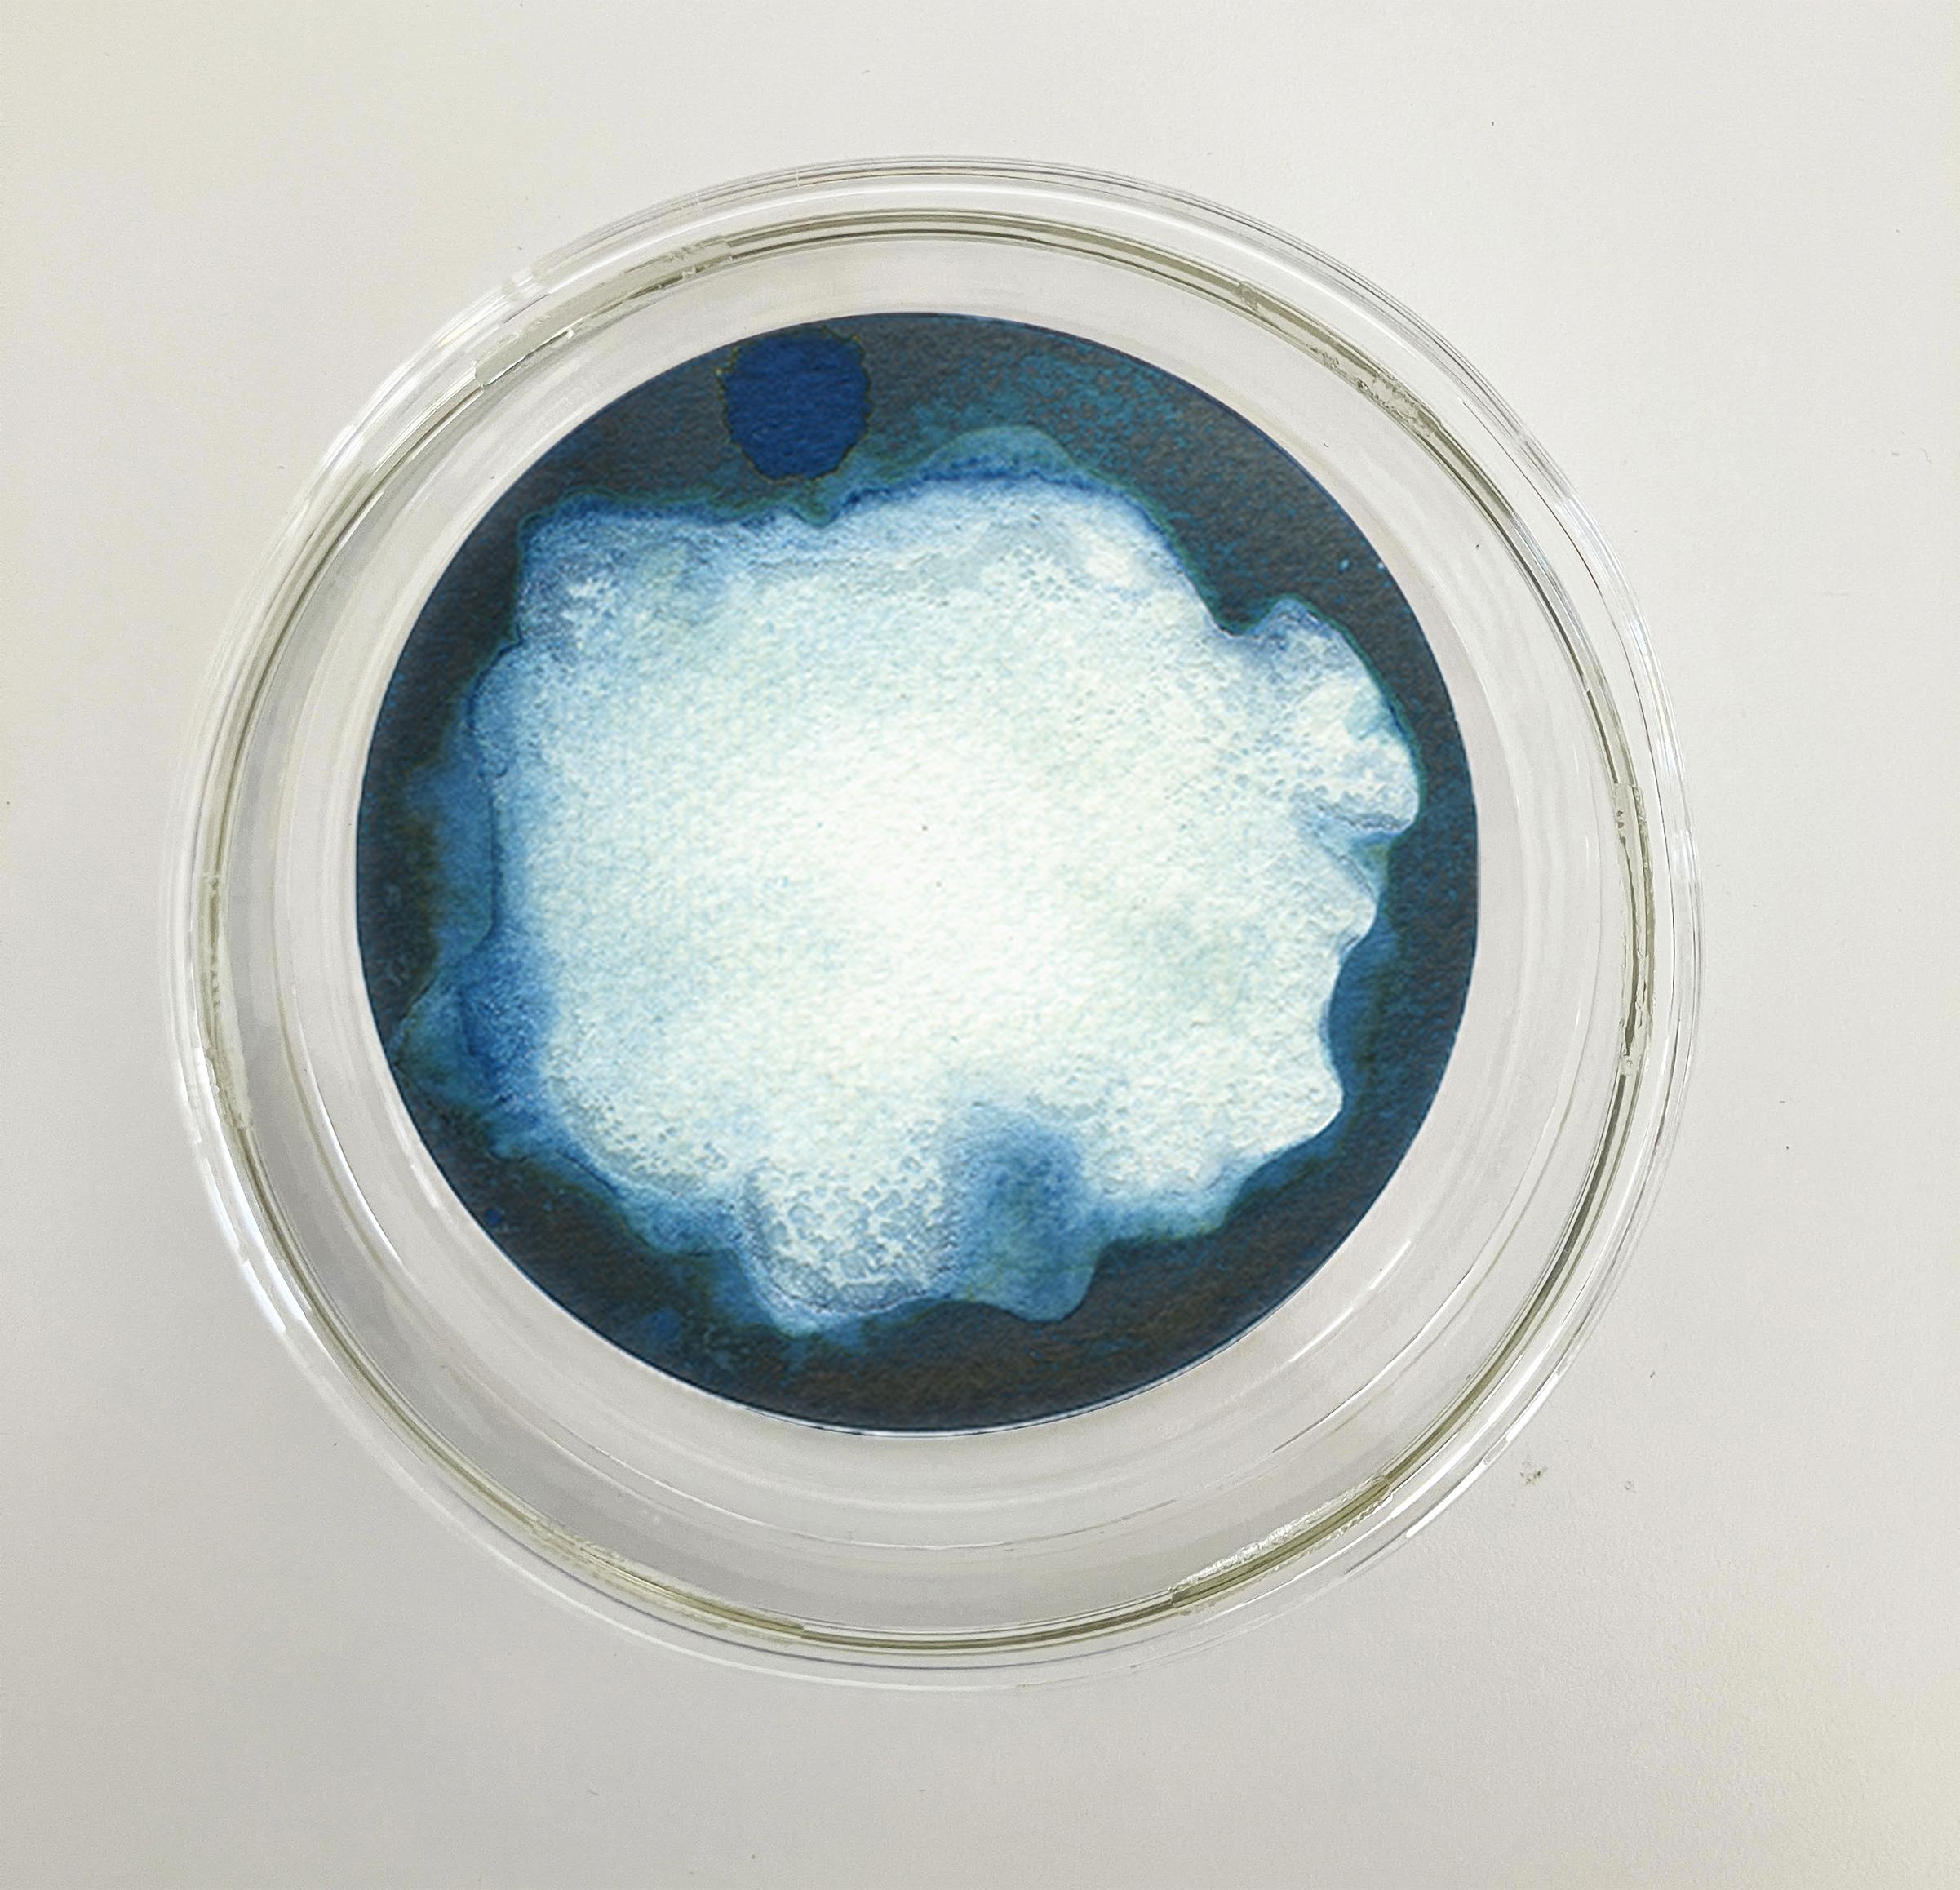 22, 23 und 24. Cyanotypie-Fotografien, montiert in einer hochfesten Glasschale – Sculpture von Paola Davila